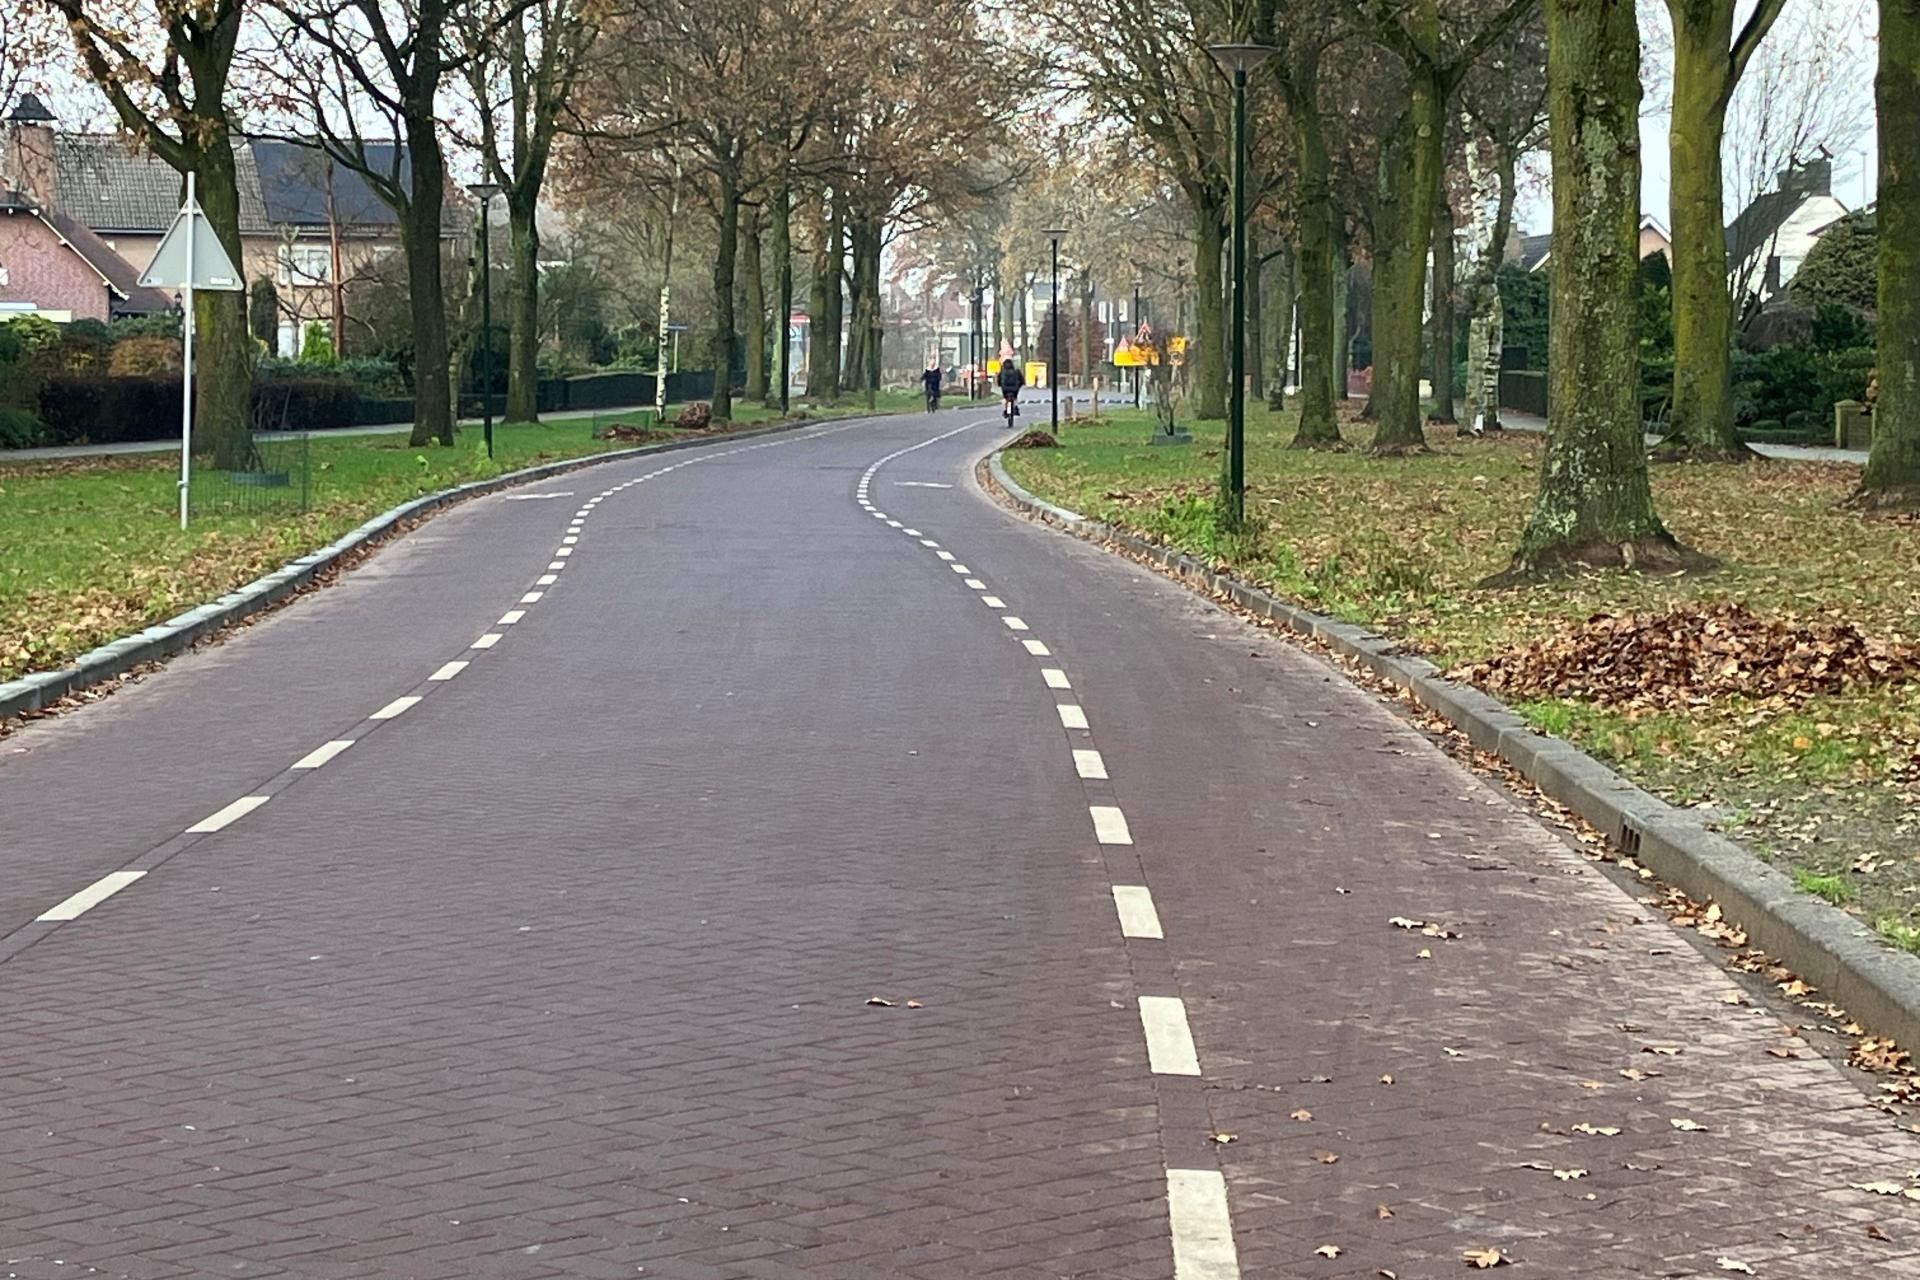 Vergroot afbeelding: afbeelding van de weg met in de verte een aantal fietsers. Langs de weg staan bomen.